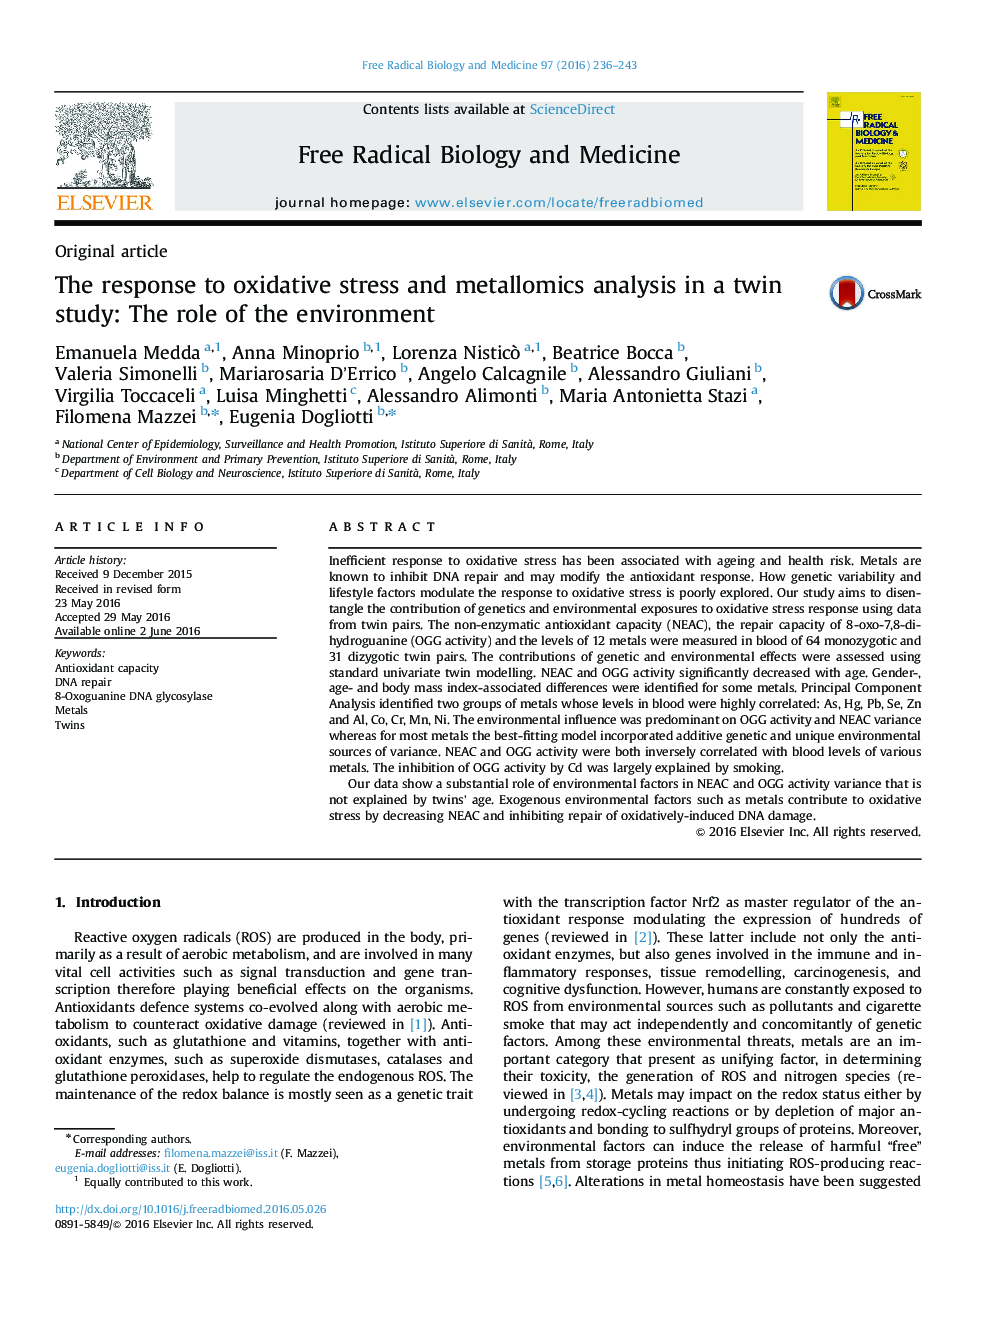 پاسخ به استرس اکسیداتیو و تجزیه و تحلیل فلزی در یک مطالعه دوقلو: نقش محیط زیست 